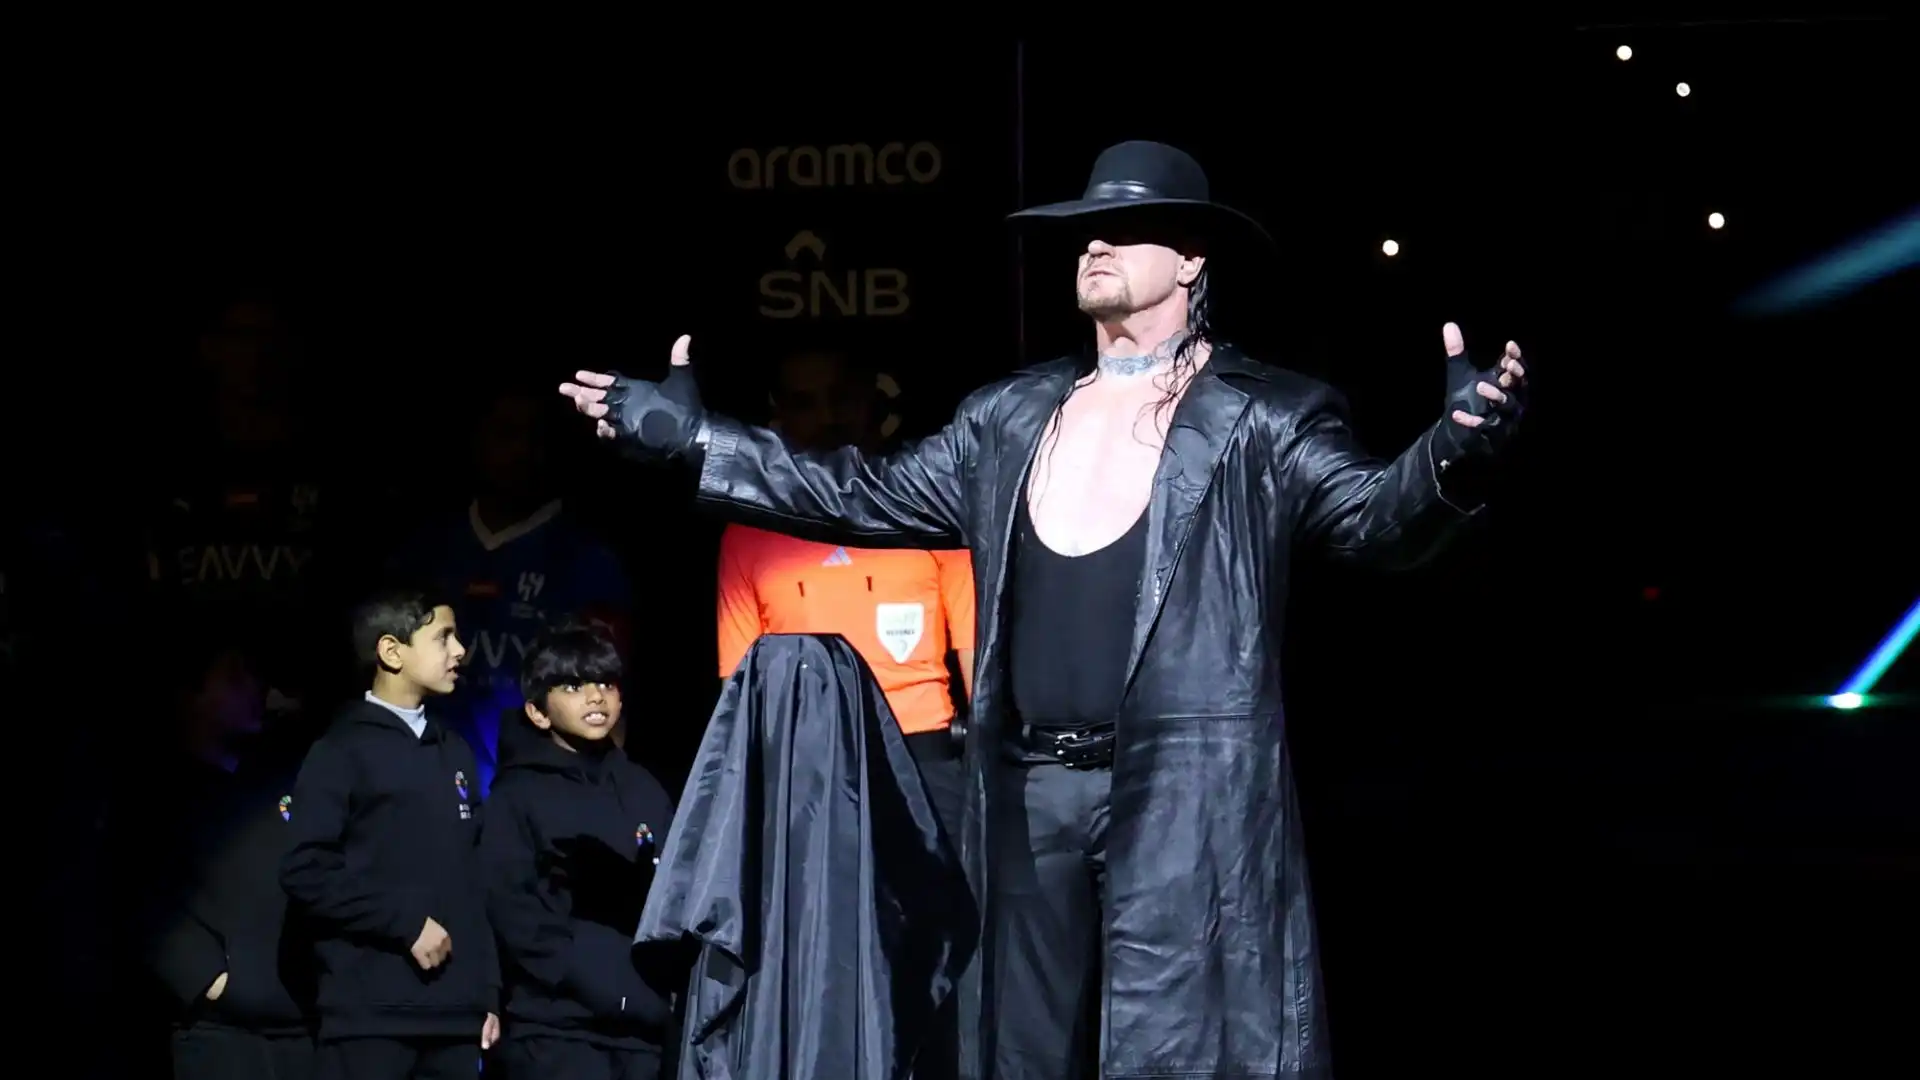 L'evento è stato aperto dal famoso wrestler della WWE, The Undertaker